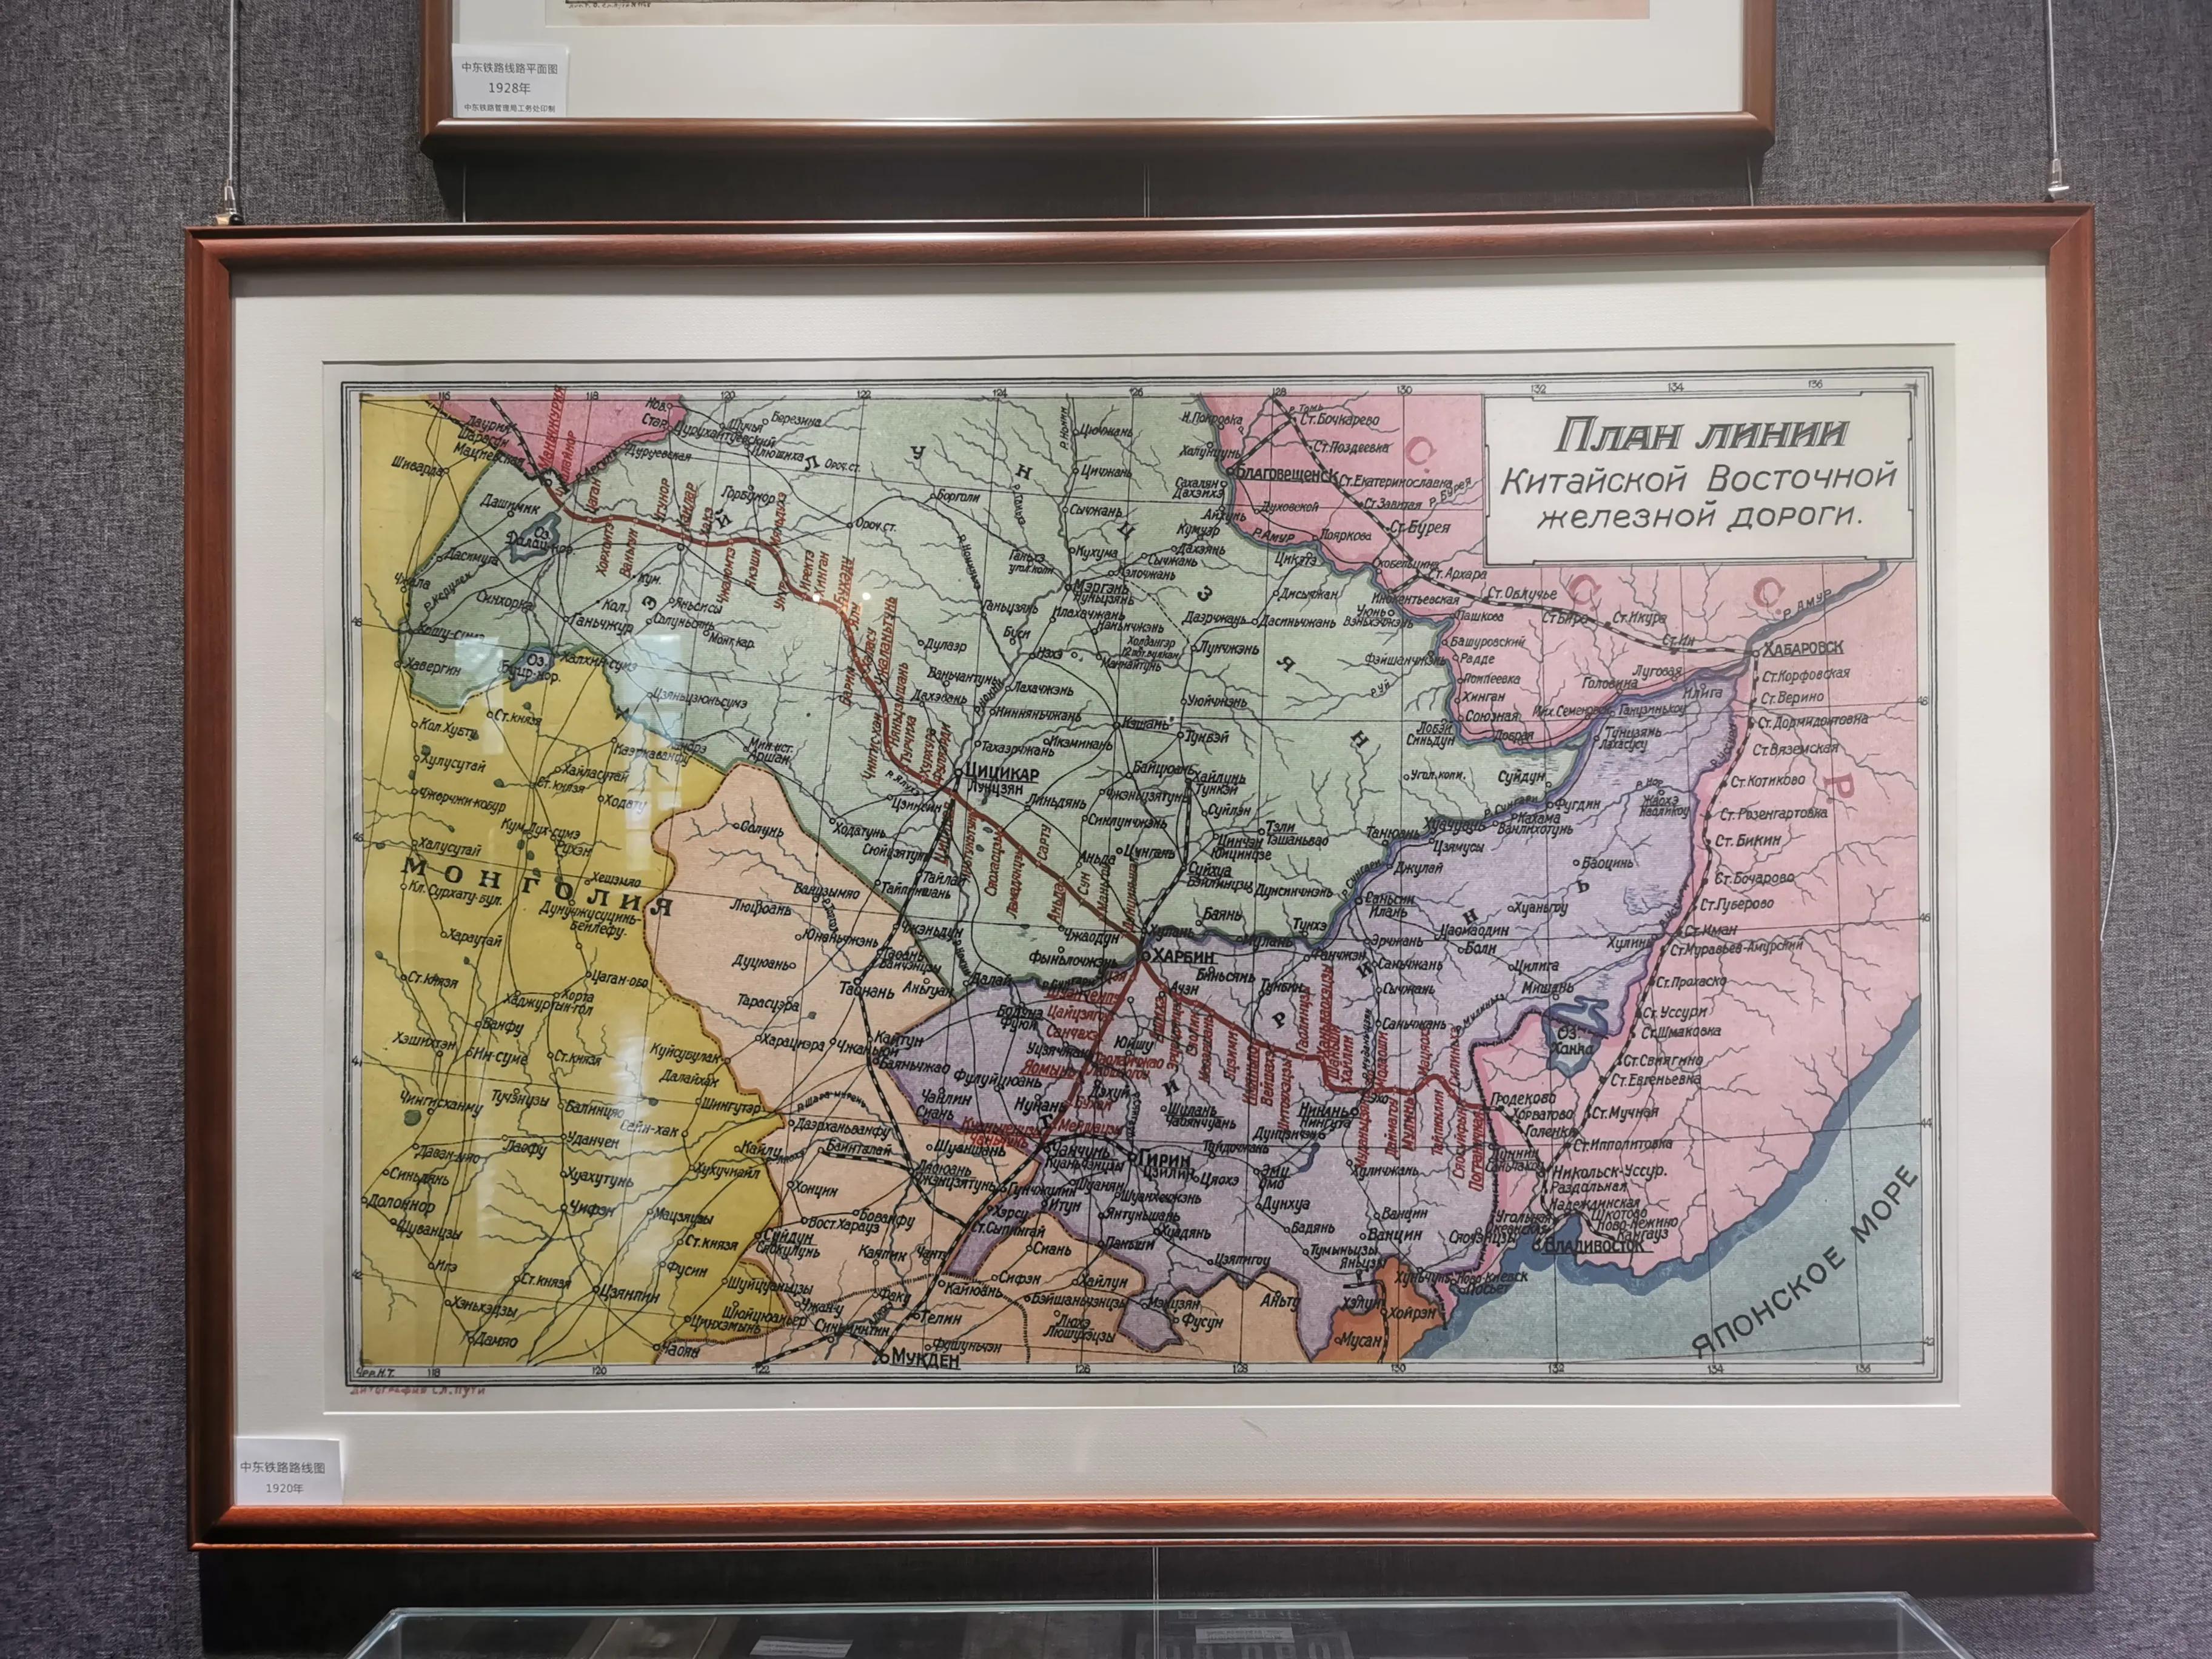 中东铁路地图(横道河子火车站：中东铁路的遗产，留下了俄罗斯风情（东北行20）)